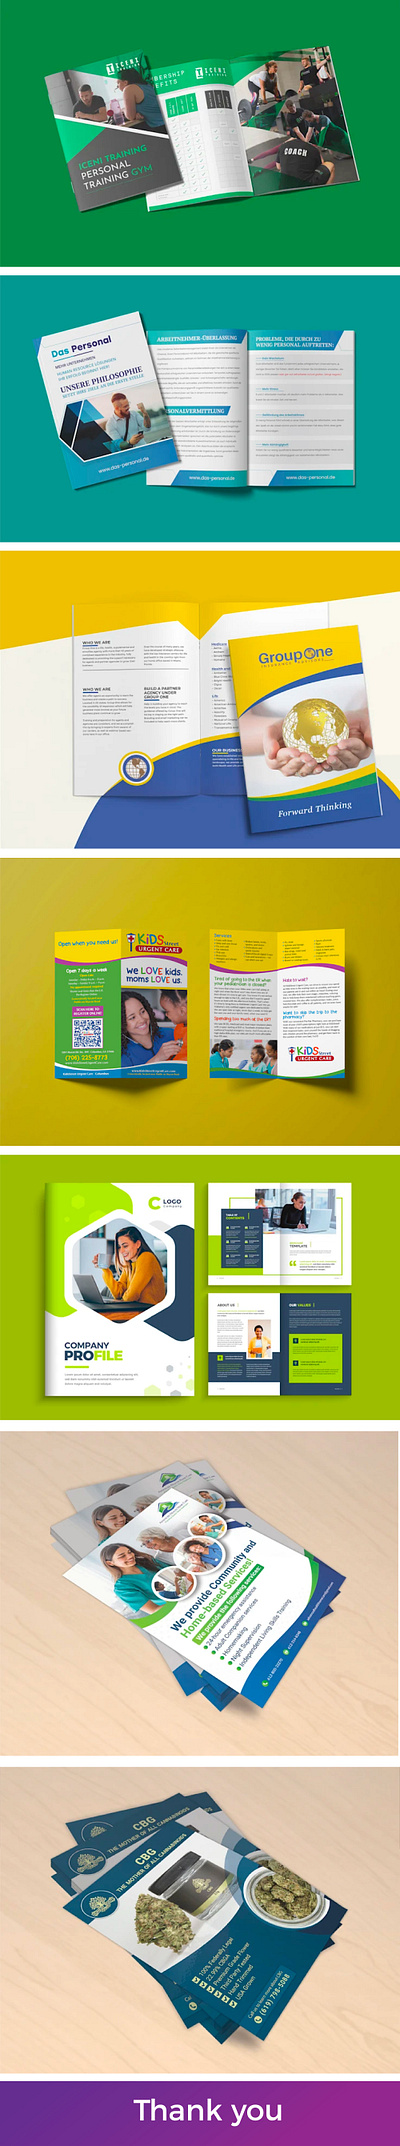 Flyer And Brochure Design best shot booklet brochure design company profile digital ebook flyer design graphic design pdf print ready proposal